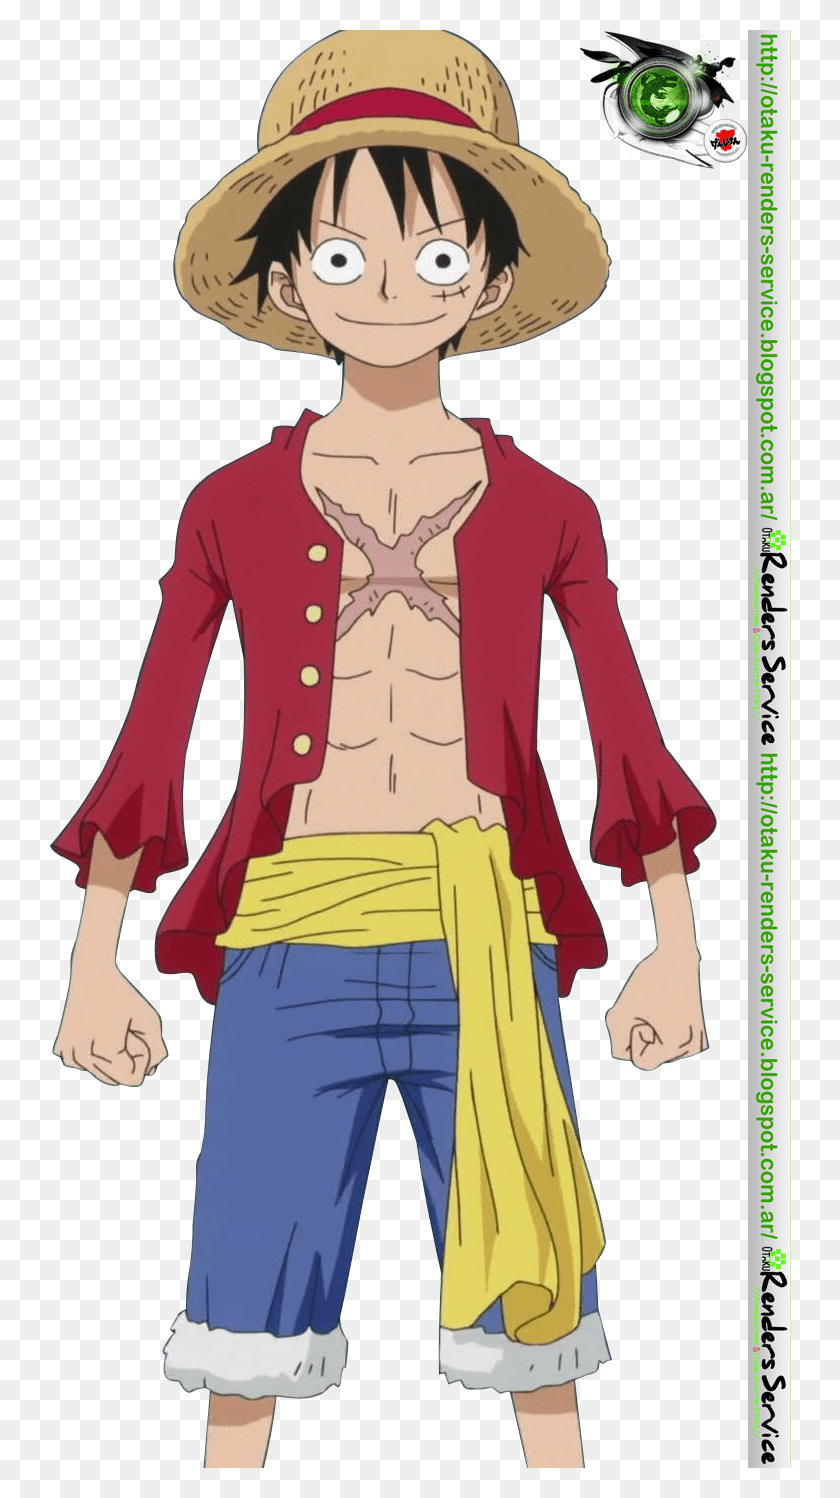 743x1438 Descargar Png Autor Del Render Mekdra Anime One Piece Personajes One Piece Anime Patrones De Punto De Cruz, Ropa, Abrigo Hd Png